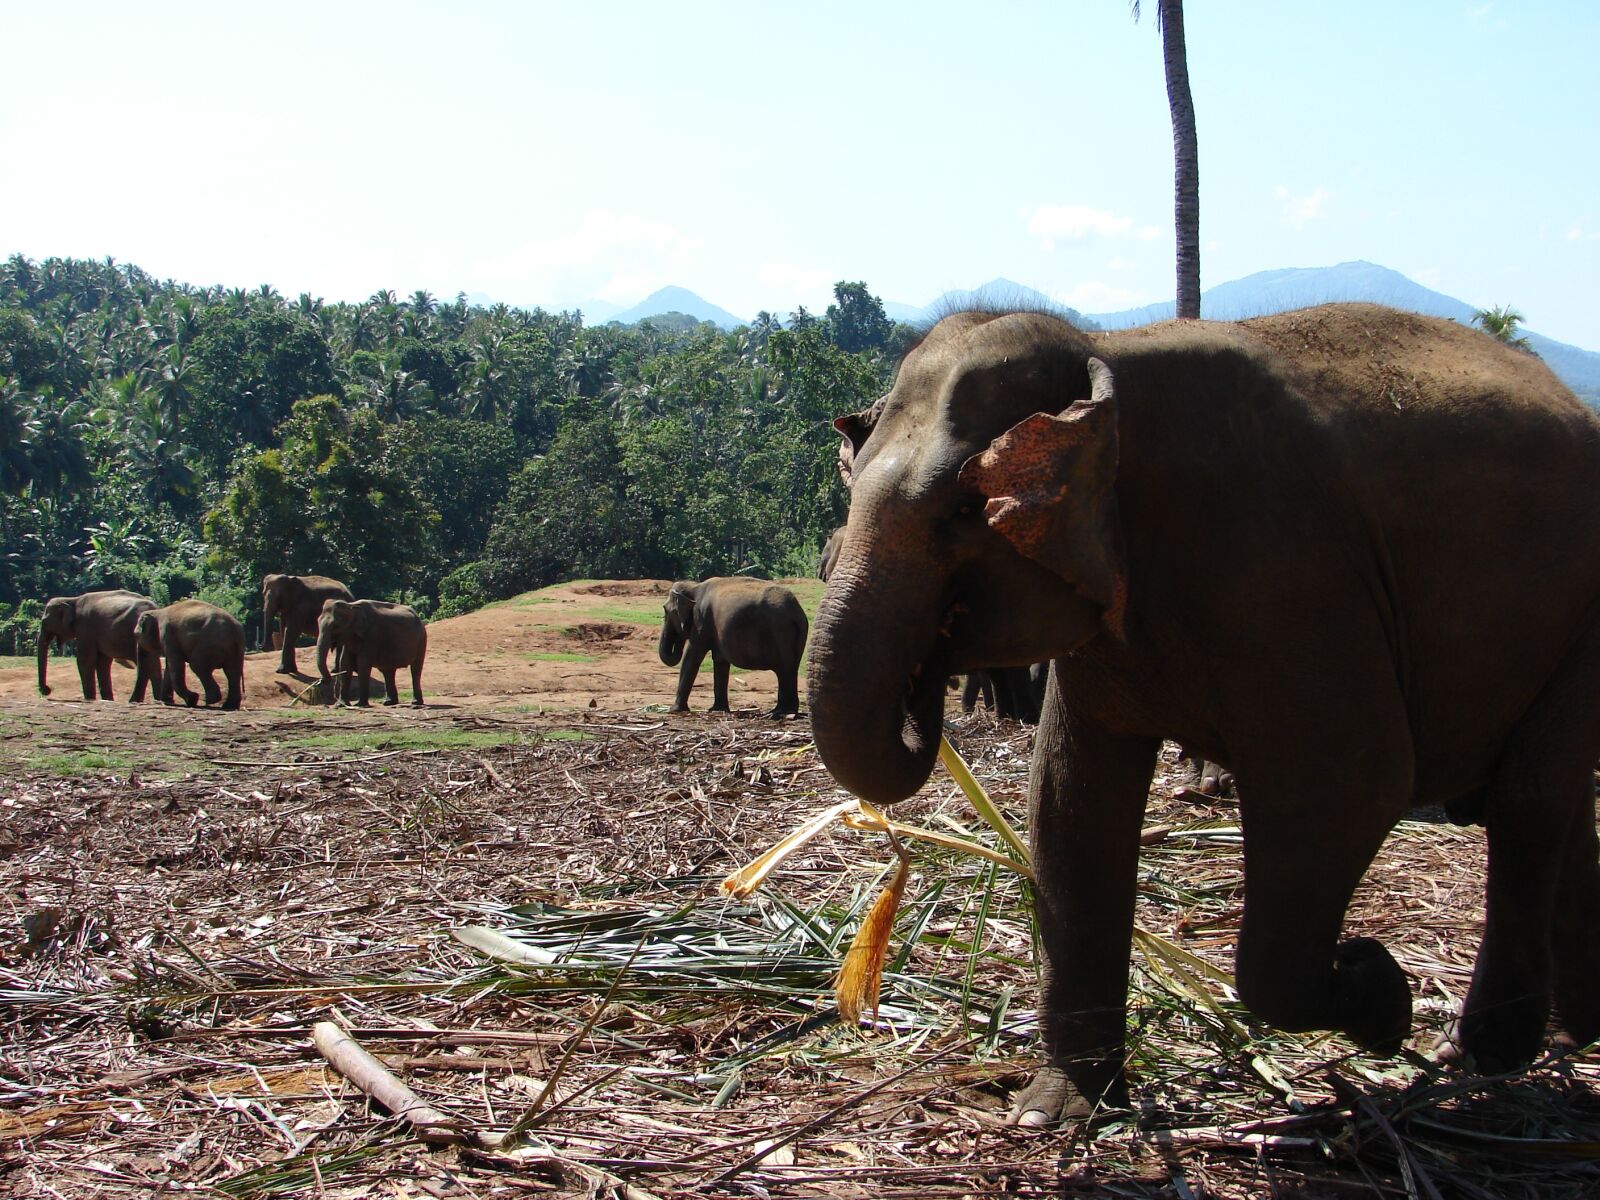 Sony DSC-H2 sample photo. Elephant, orphanage, kandy photography